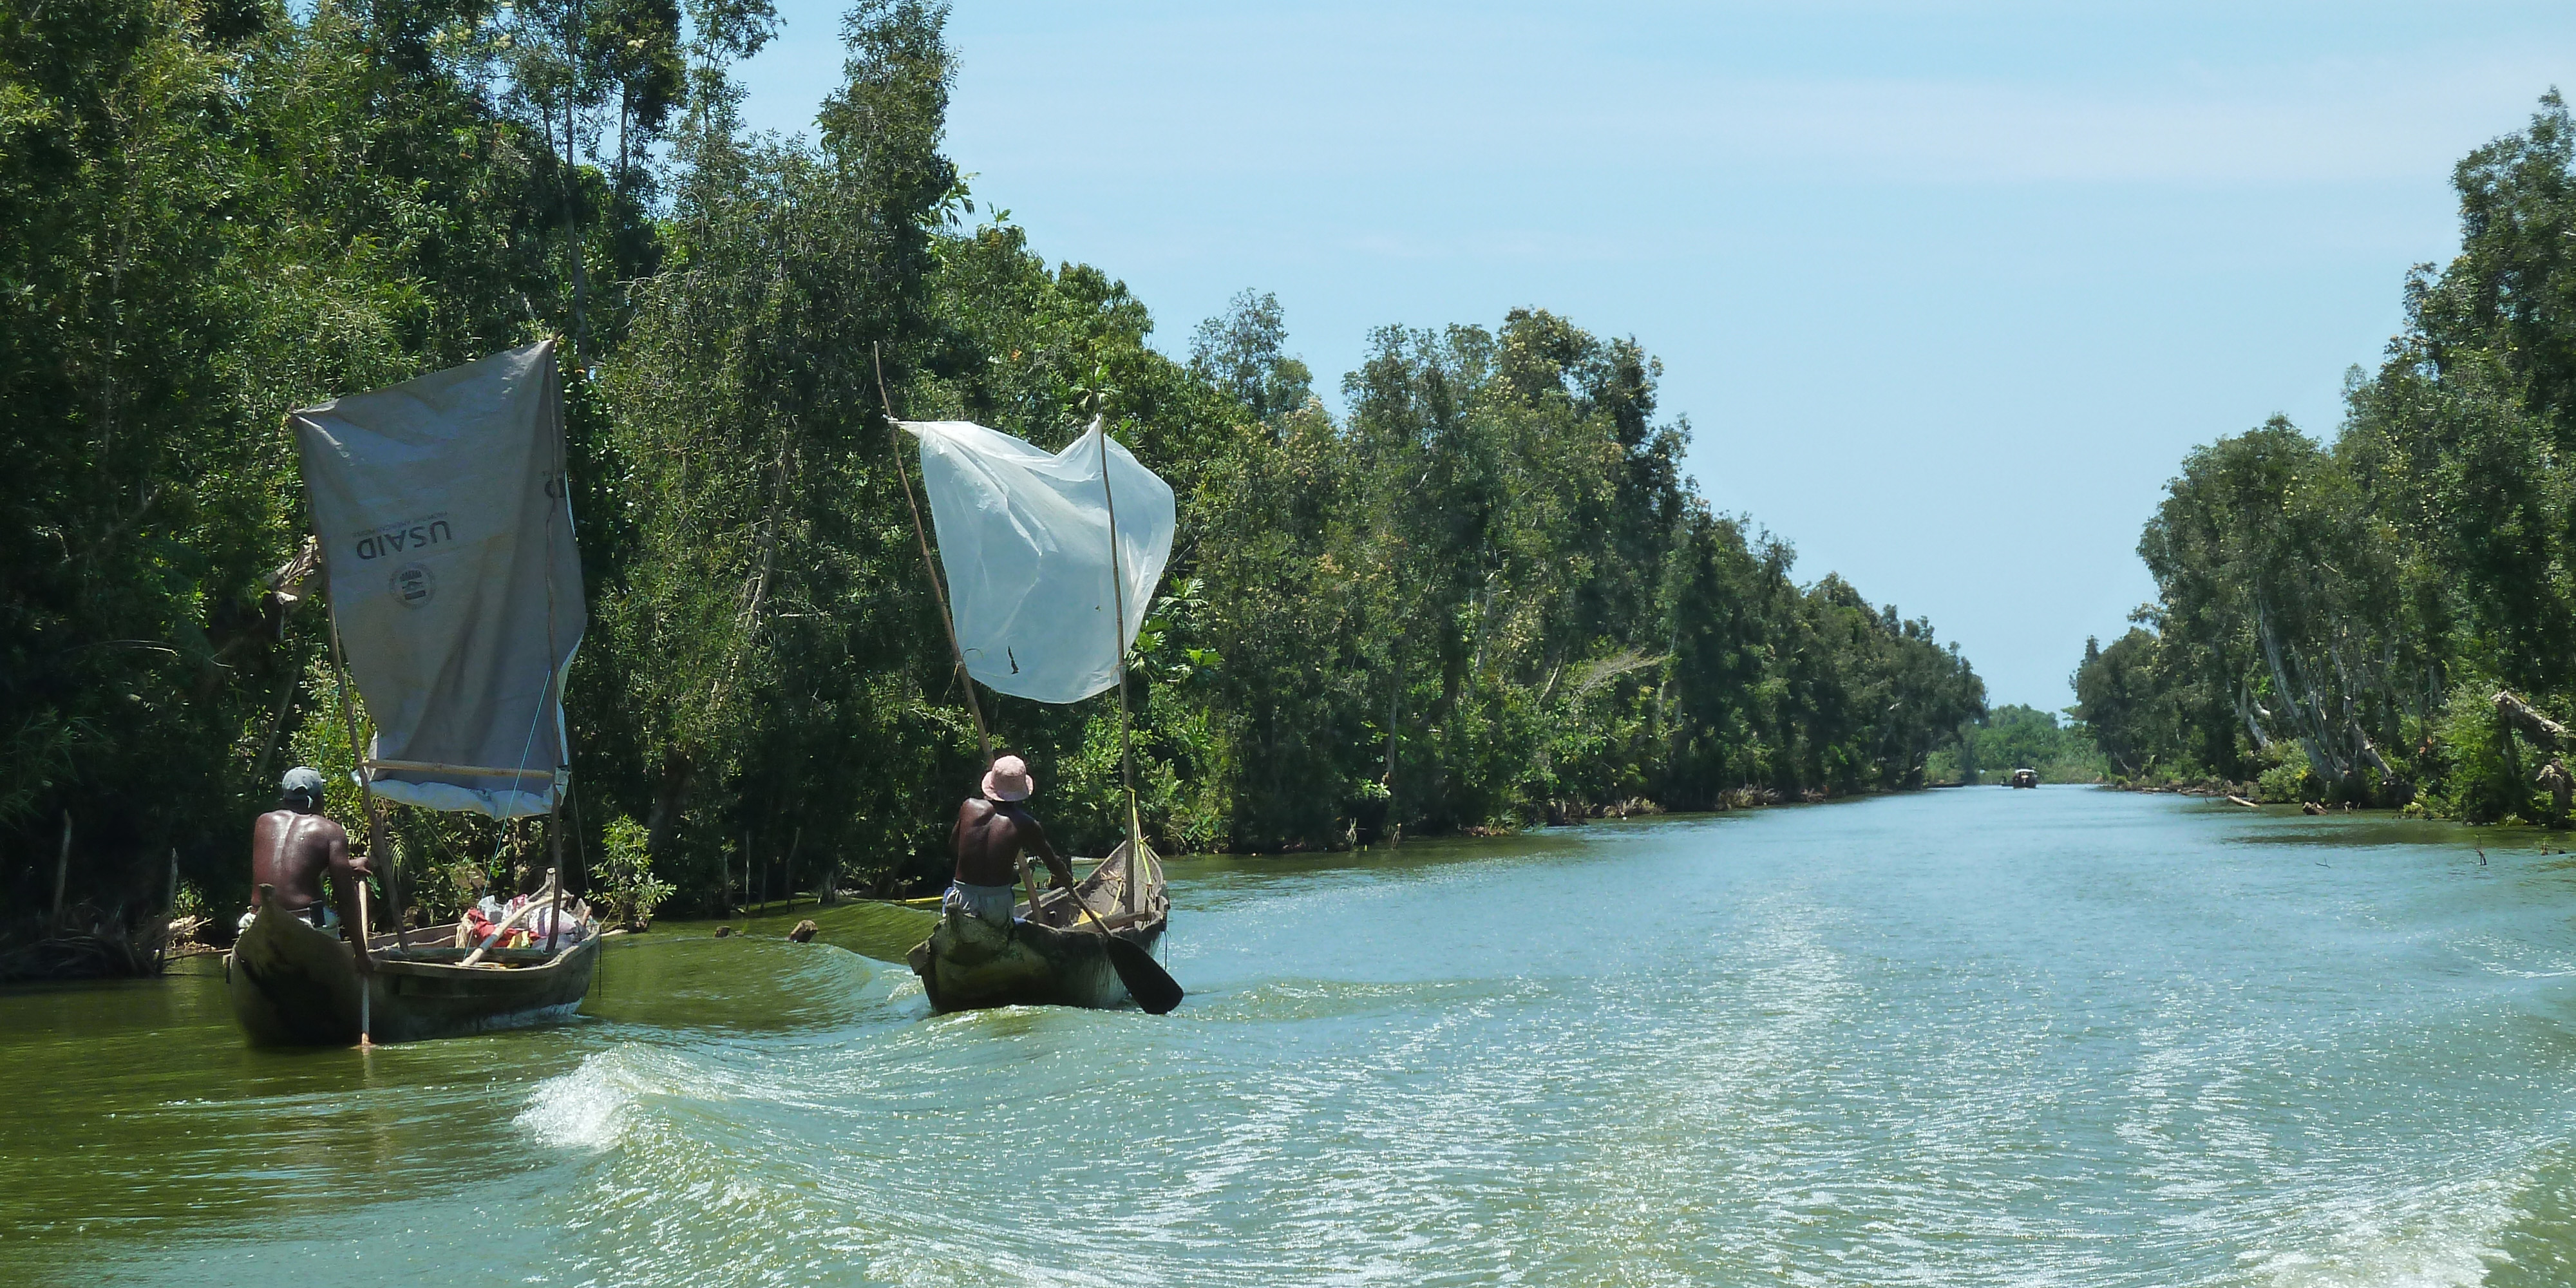 Canal de Pangalanes.
                 In de loop van de dag vaar je naar Tamatave, de grootste havenstad van Madagaskar. 
                 De boottocht door het Canal de Pangalanes duurt ruim twee uur. Onderweg zie hoe de 
                 bevolking leeft in kleine nederzettingen aan de oevers en zie je vrouwen de was doen 
                 en mannen hun visnetten binnenhalen.